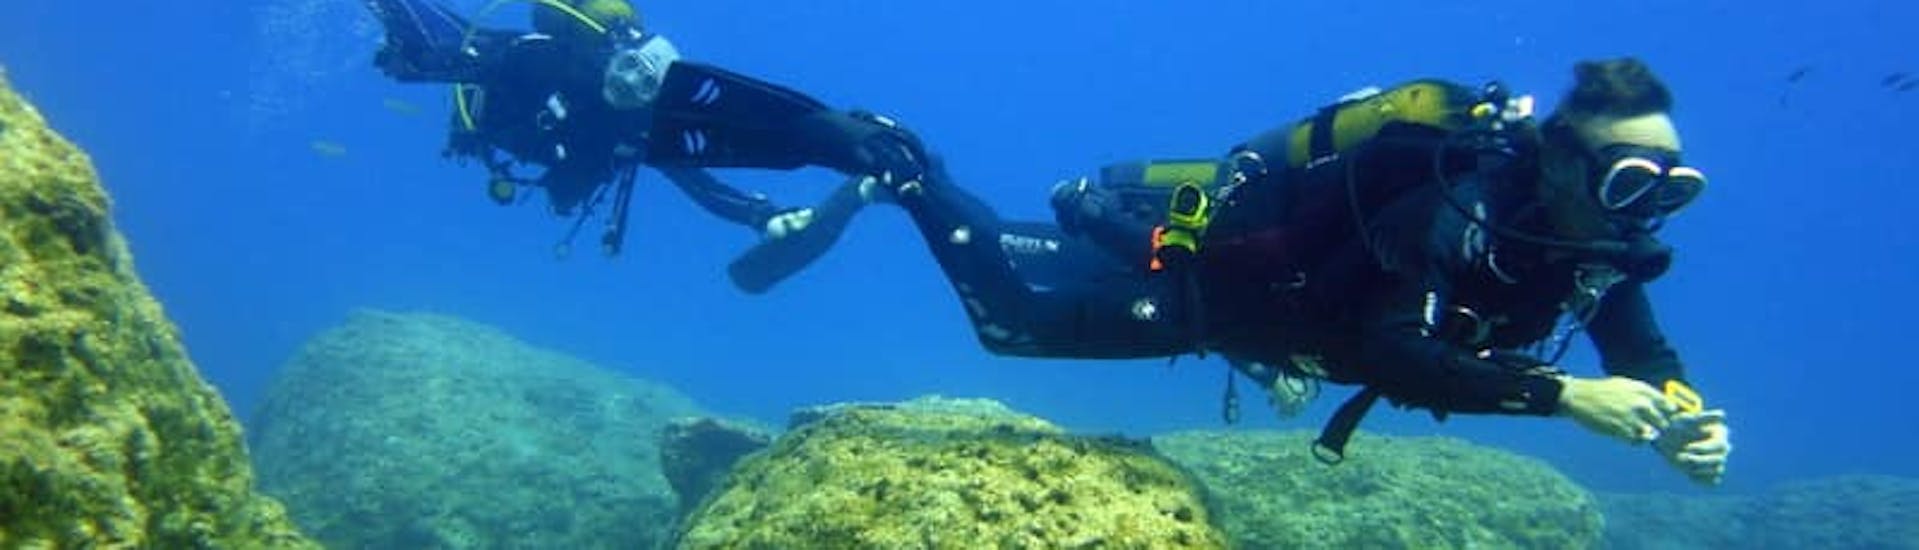 Begeleide duiken op Zakynthos voor gecertificeerde duikers.